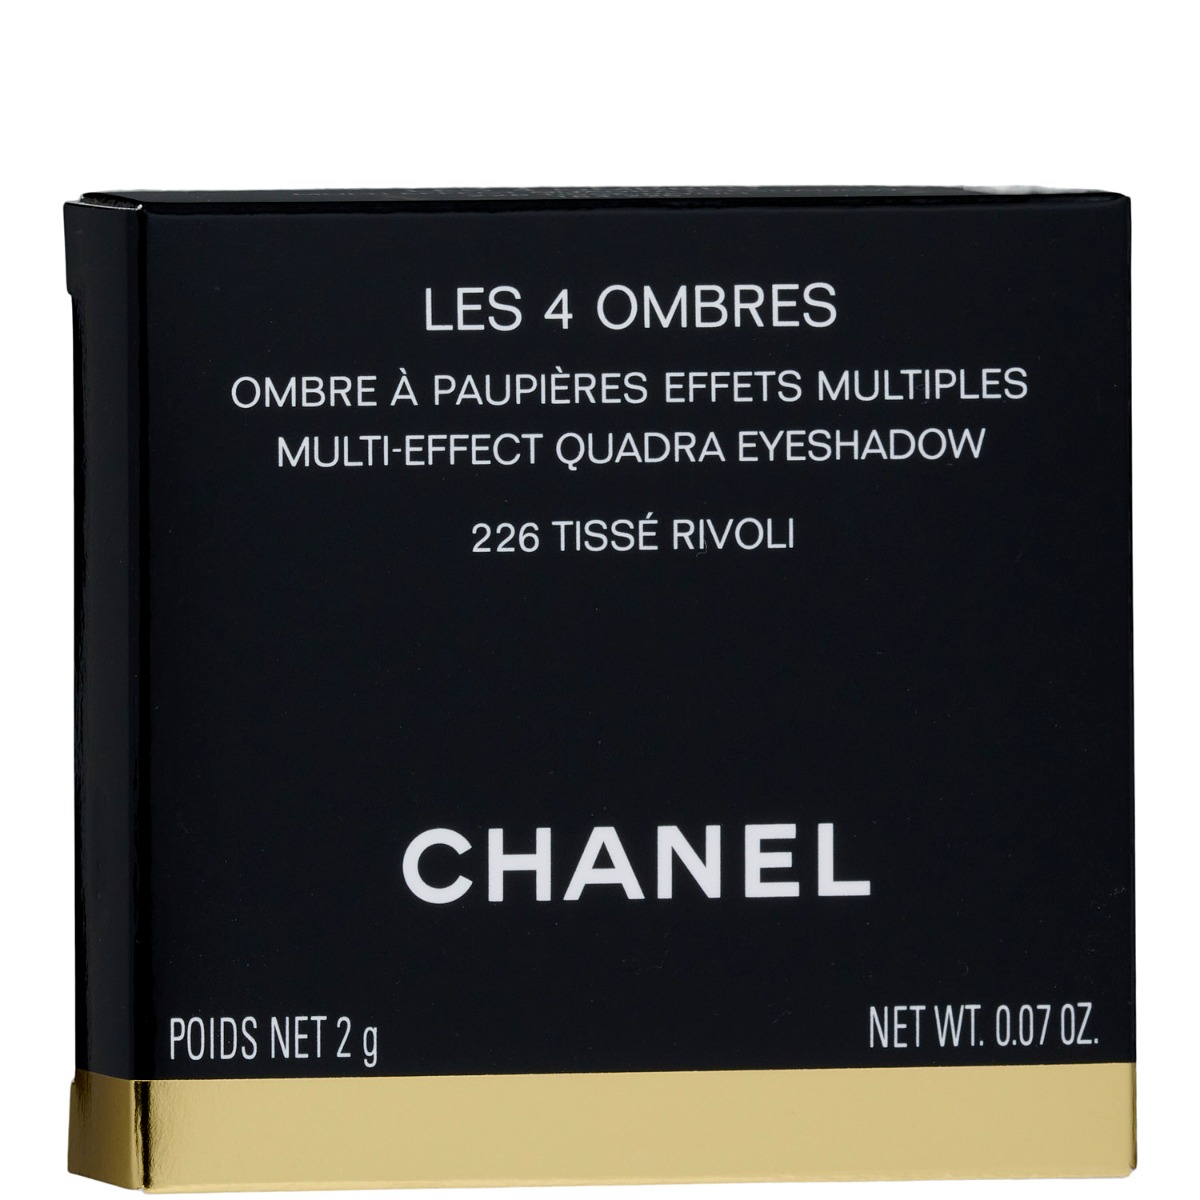 Chanel Les 4 Ombres Quadra Eye Shadow - No. 226 Tisse Rivoli 2g